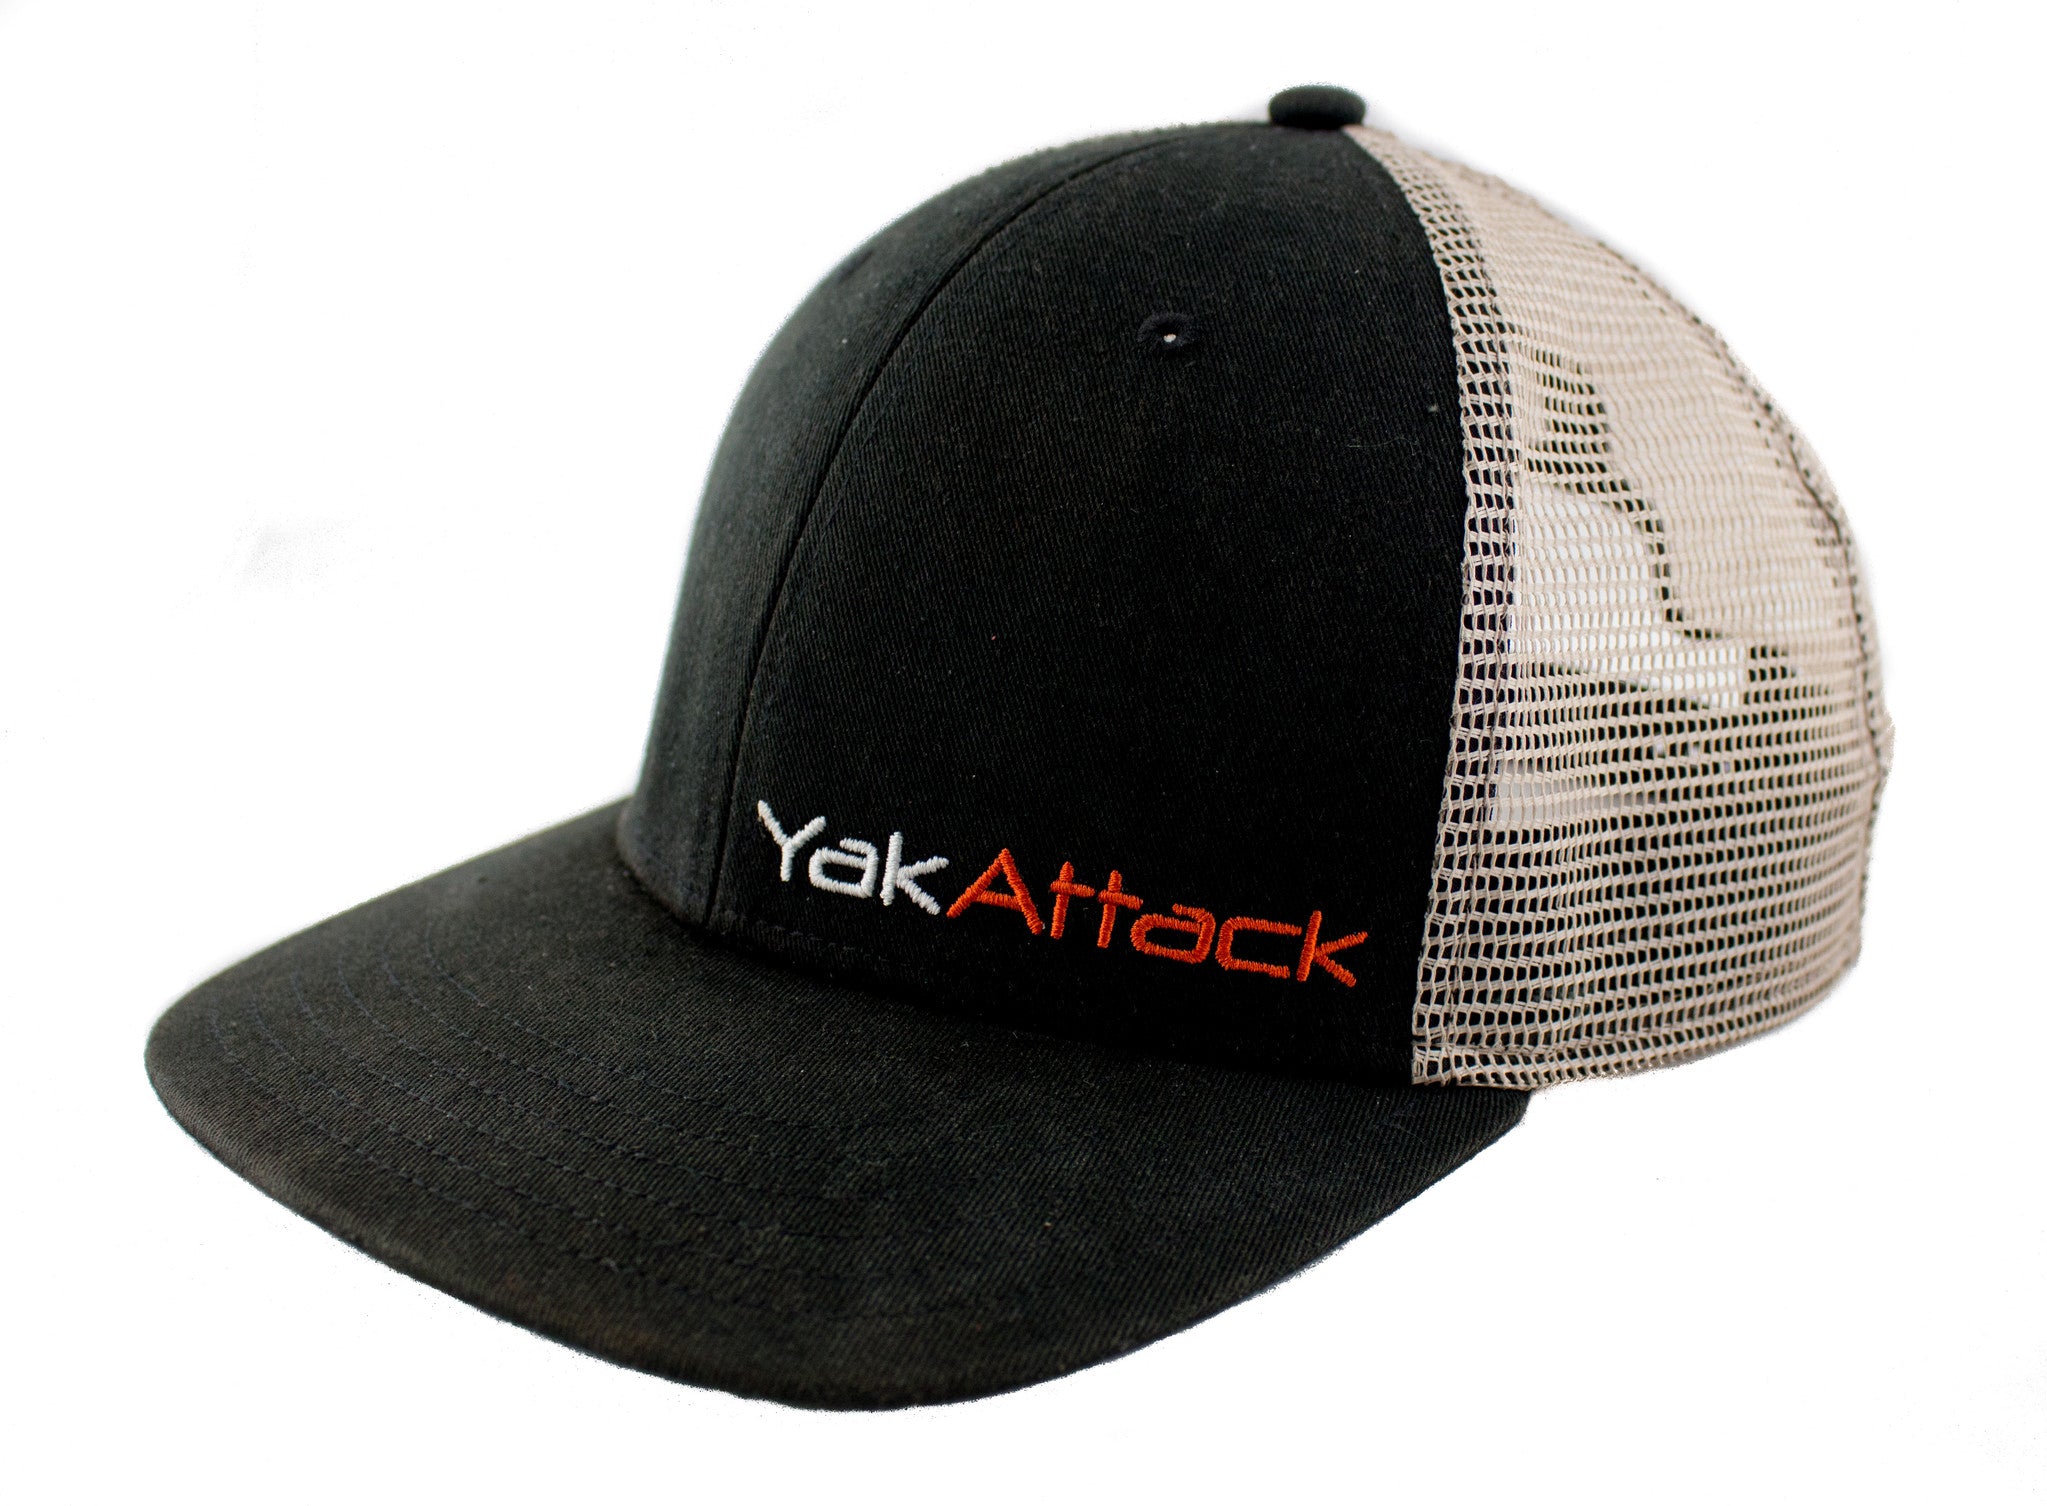 YakAttack - BlackPak Trucker Hat